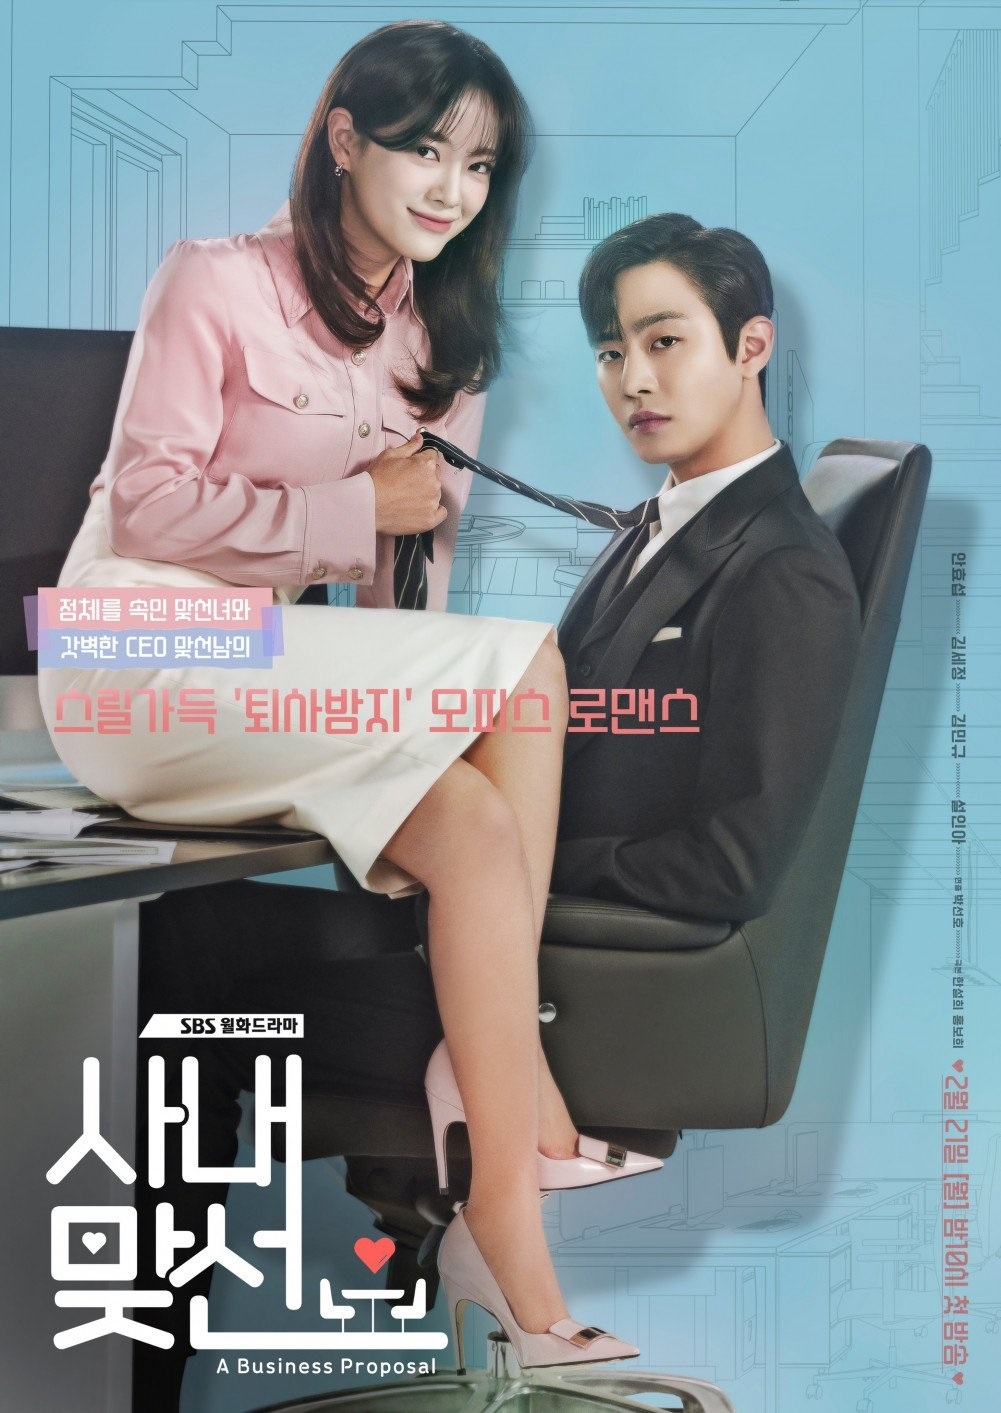 “A Business Proposal” của Ahn Hyo Seop và Kim Se Jeong lập kỷ lục rating ngay tập đầu lên sóng